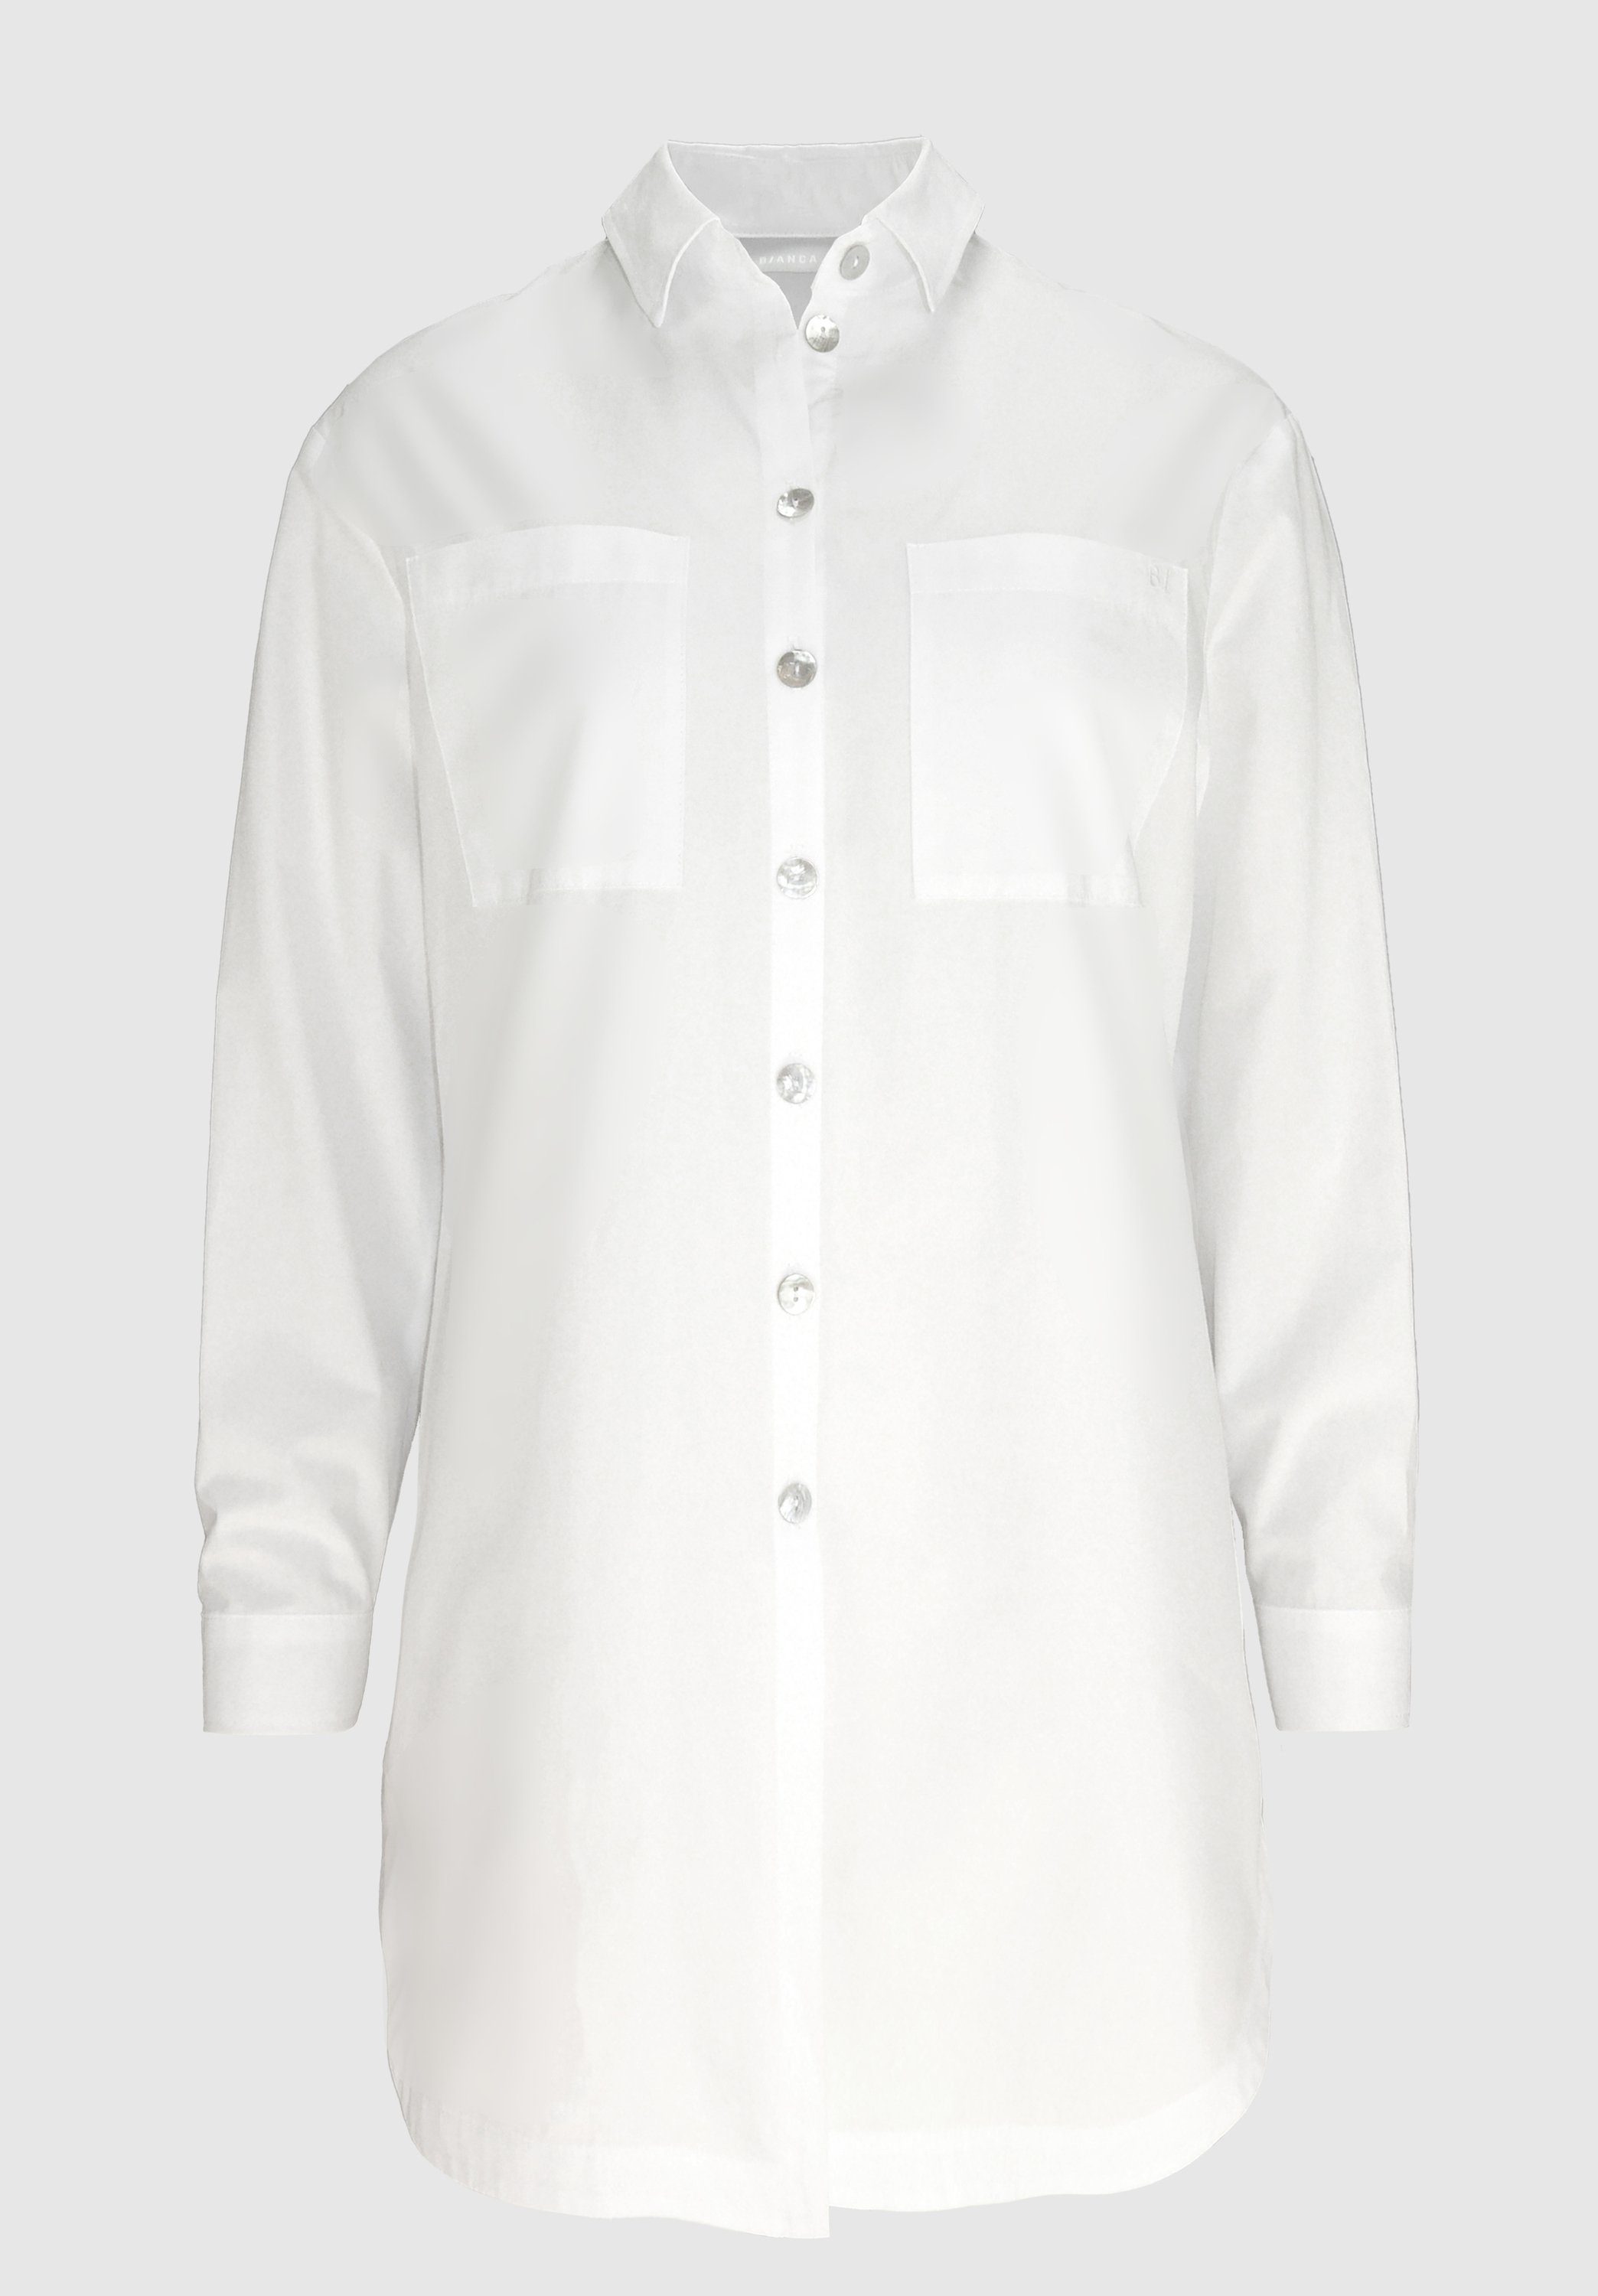 längerer Hemdbluse in Form white stylischen Details moderner, mit ADELA bianca